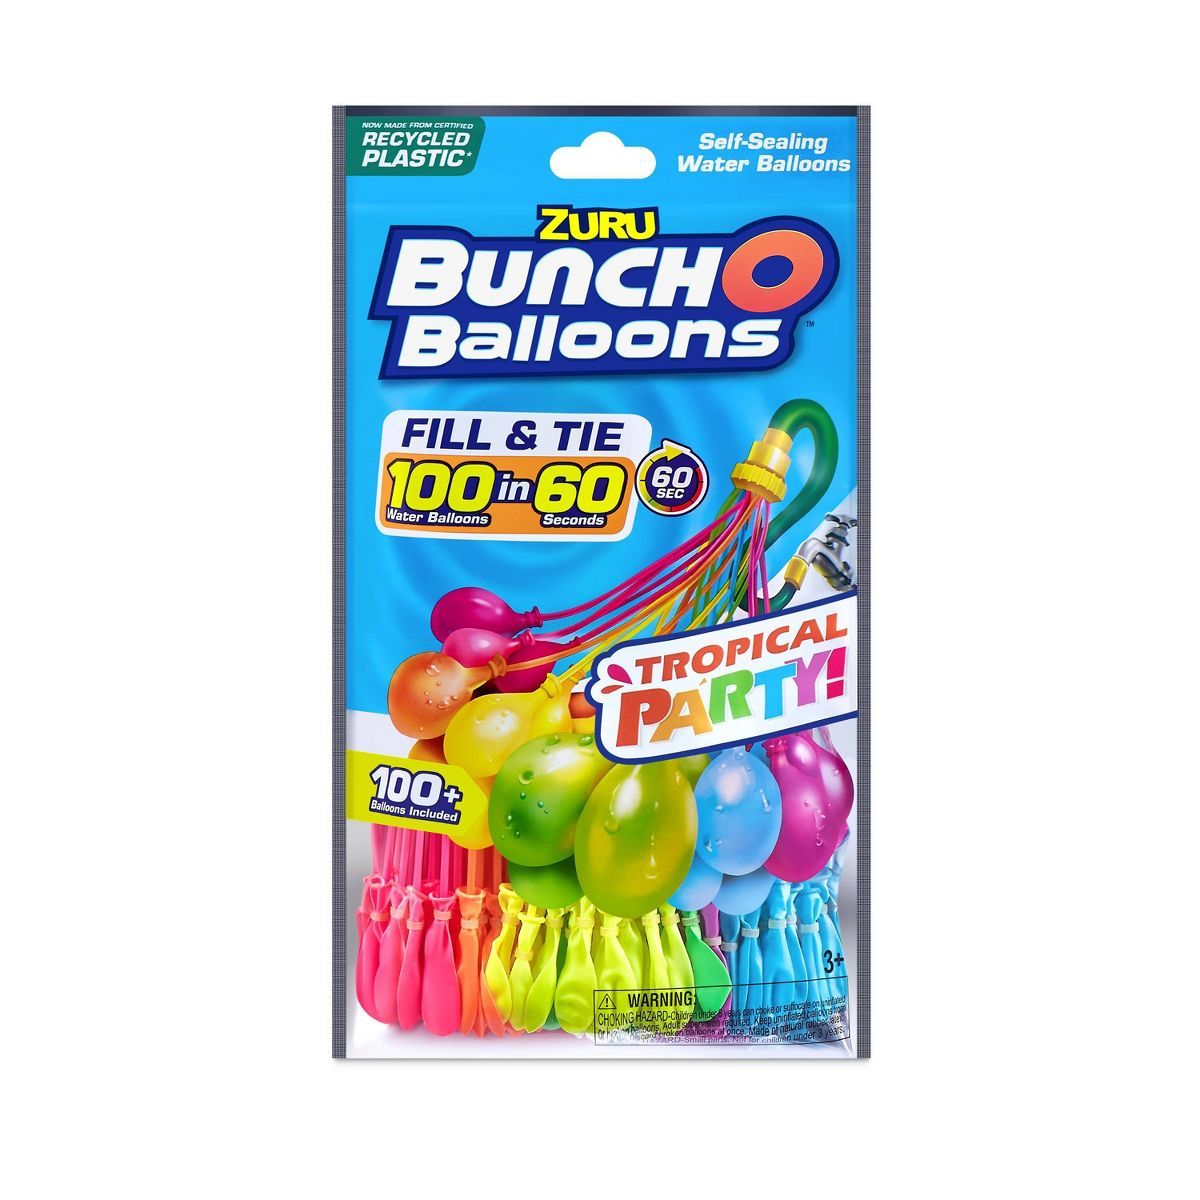 Bunch O Balloons 3pk Rapid-Filling Self-Sealing Water Balloons by ZURU | Target